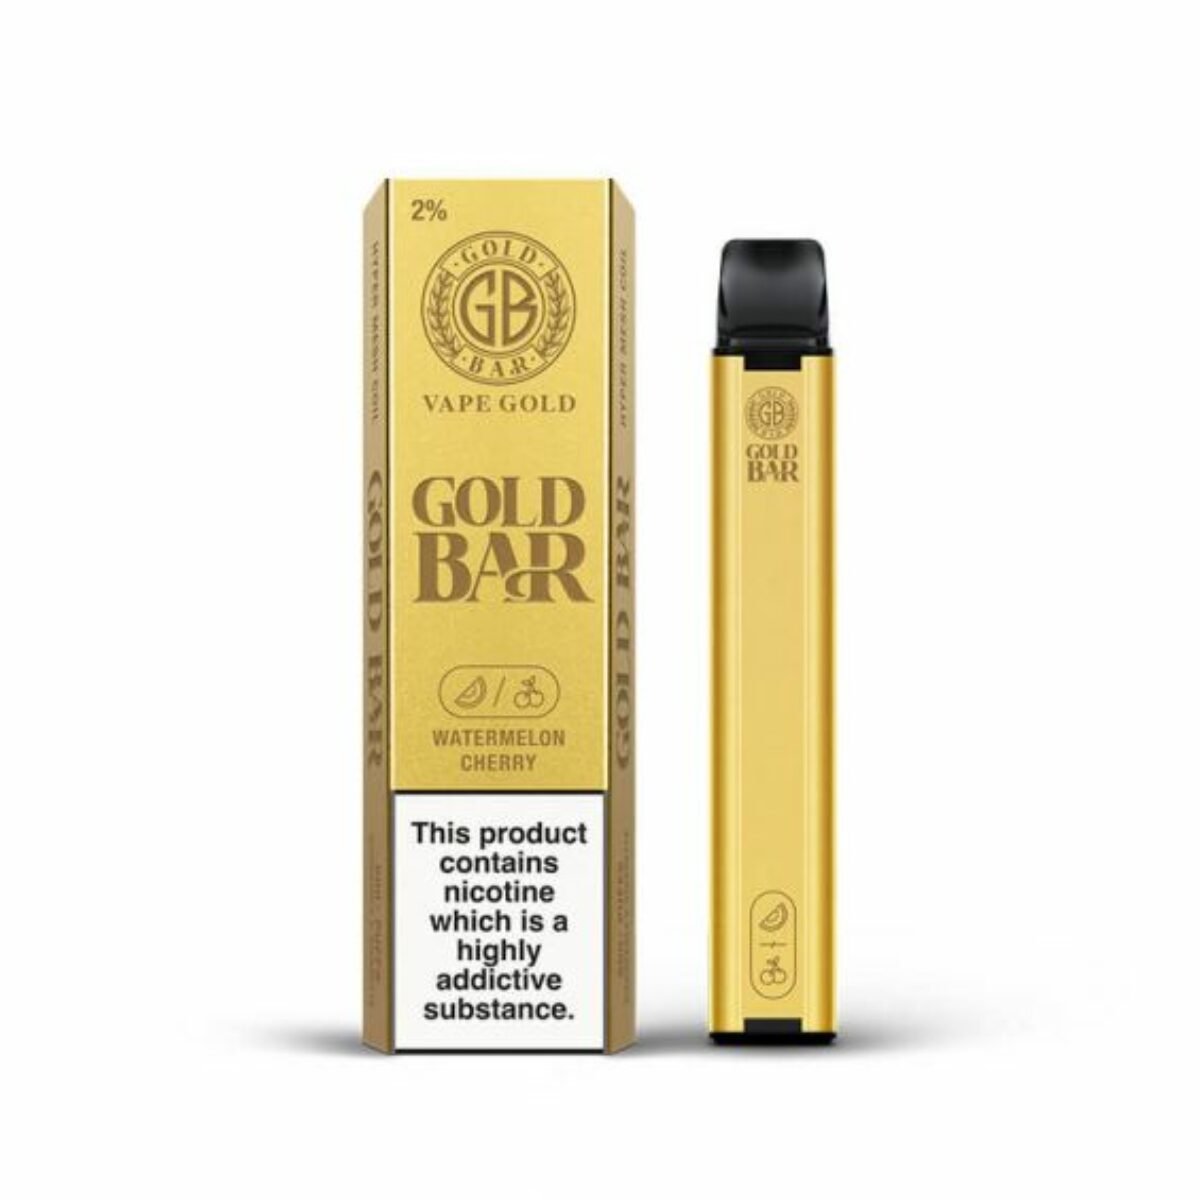 Gold Bar 600 Disposable Vape Pod Puff Bar Pen - Wolfvapes.co.uk-Watermelon Cherry *New*